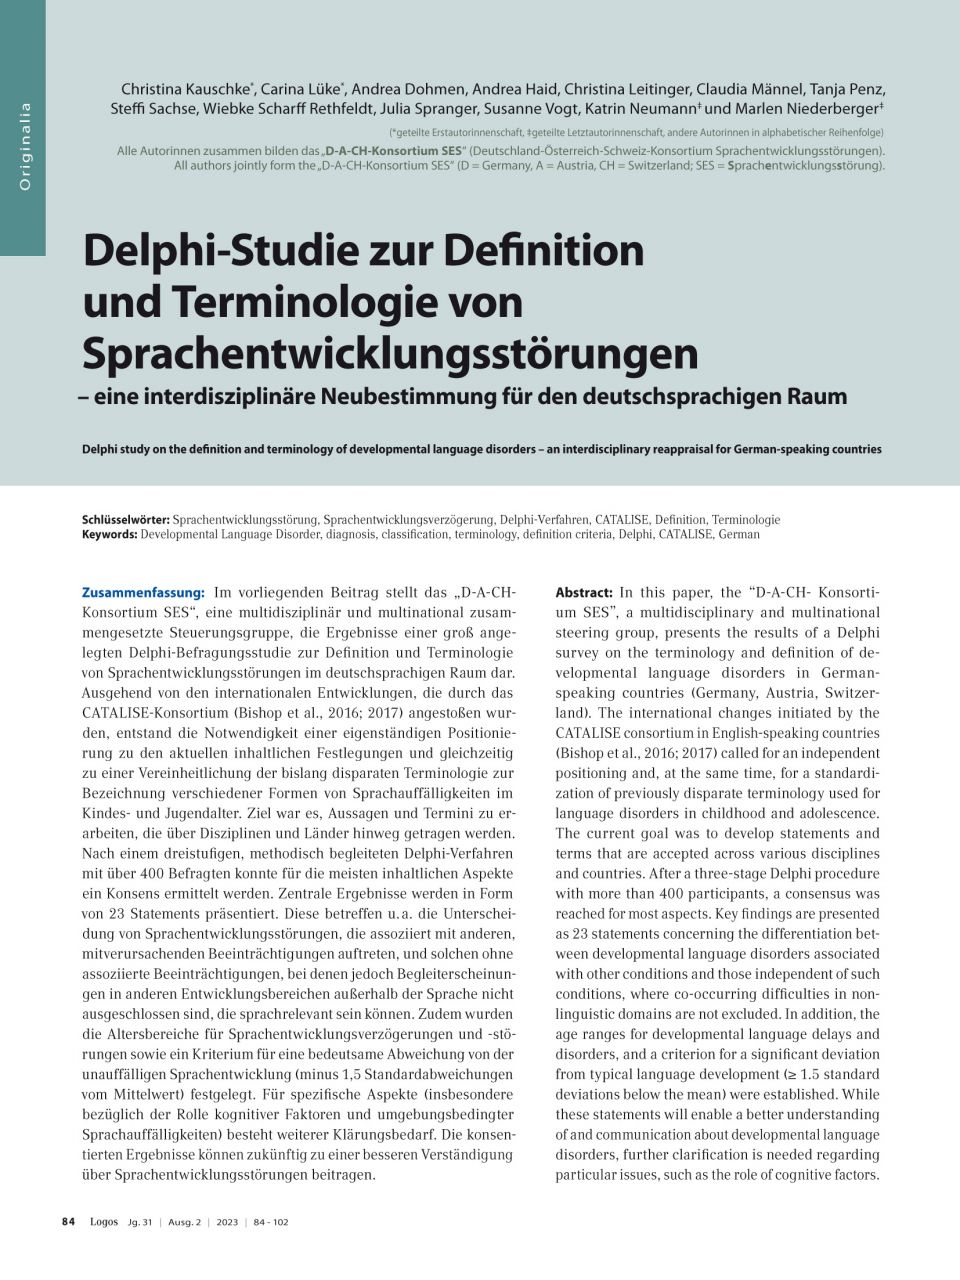 Delphi-Studie zur Definition und Terminologie von Sprachentwicklungsstörungen – eine interdisziplinäre Neubestimmung für den deutschsprachigen Raum